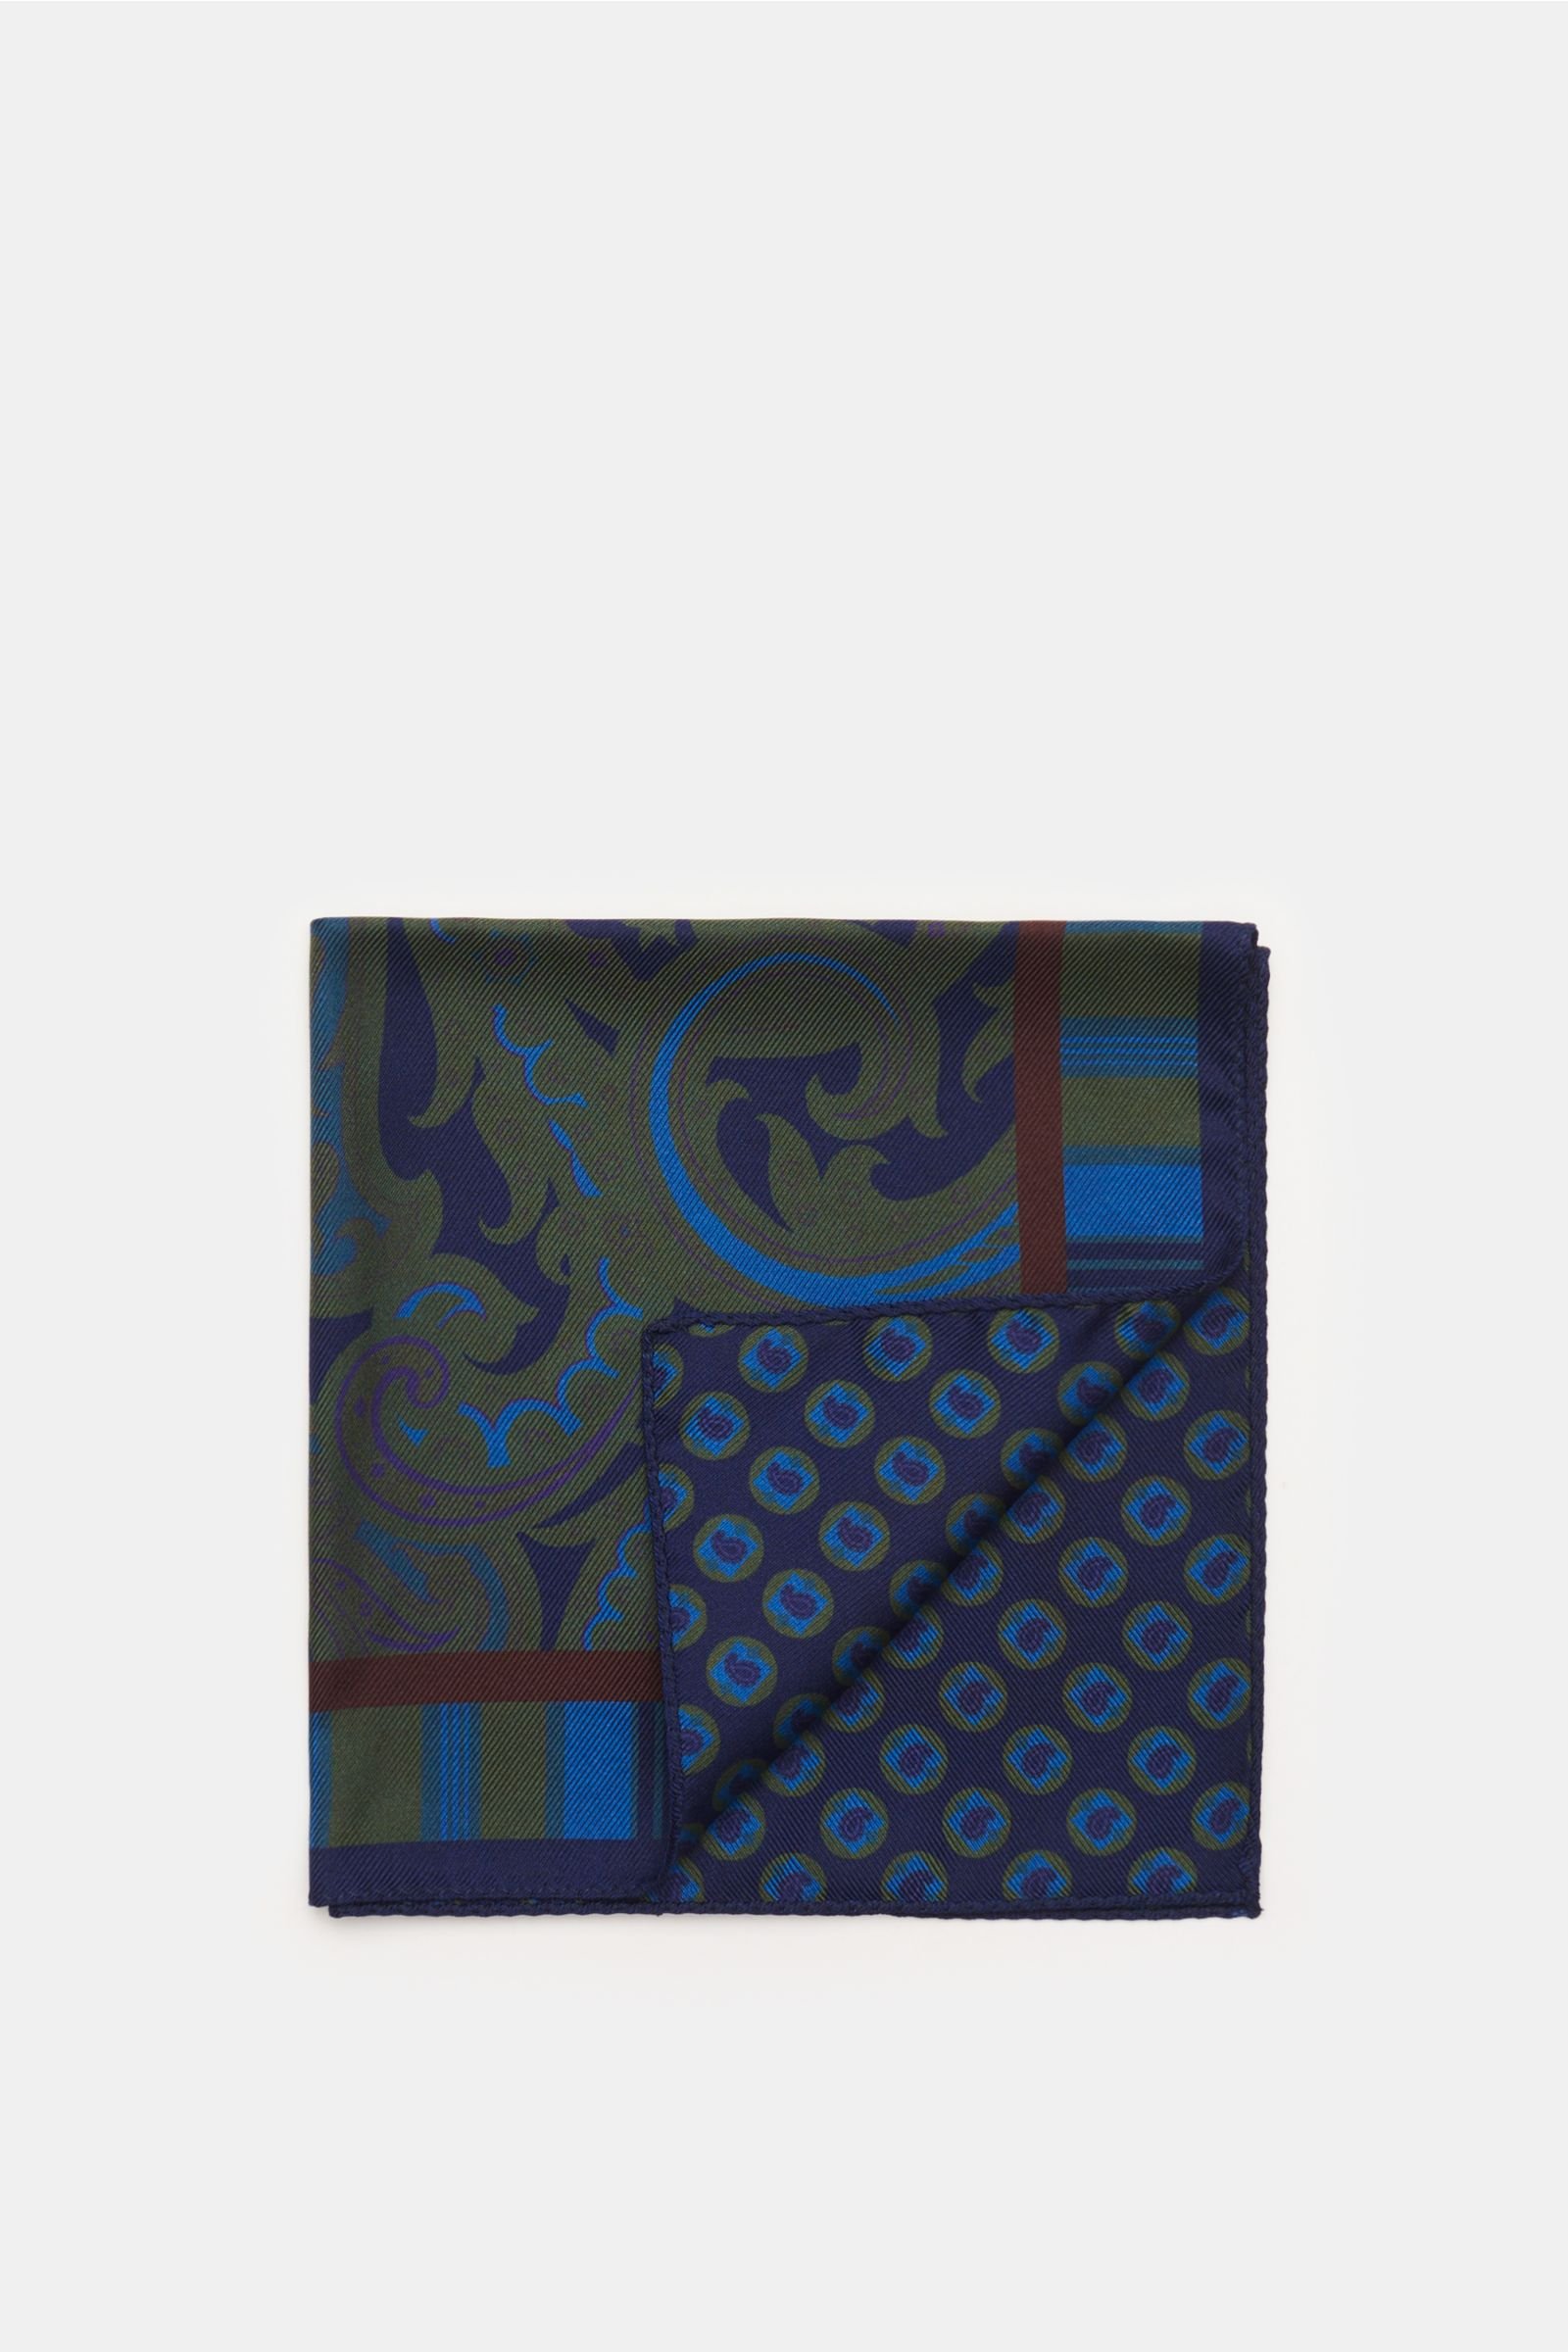 Pocket square navy/olive patterned